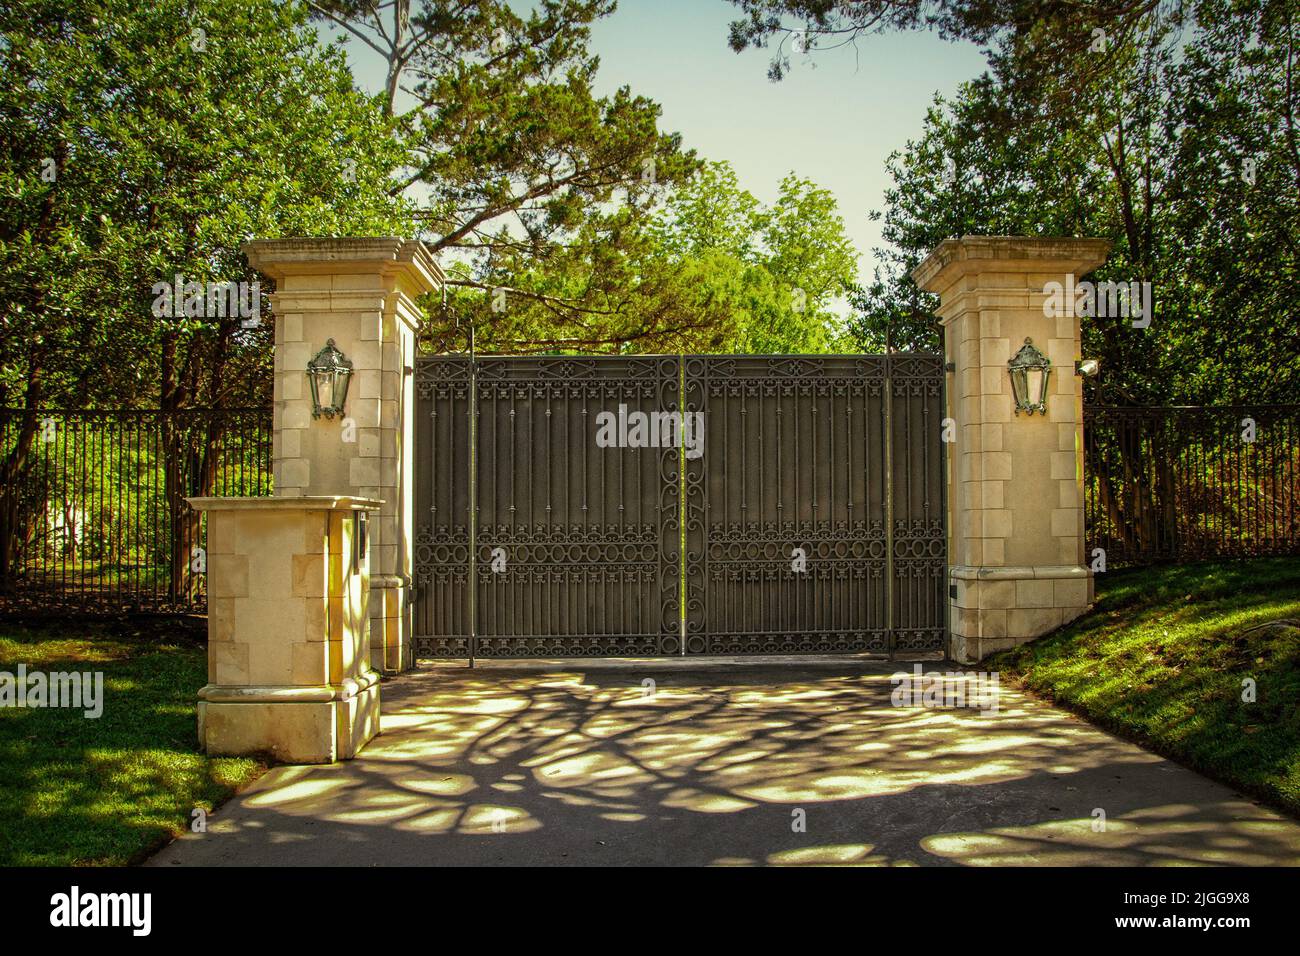 Chiuso imponente cancello di sicurezza di lusso in ferro battuto con tastiera per la proprietà residenziale privata in un quartiere verde con alberi verdi e ombre Foto Stock